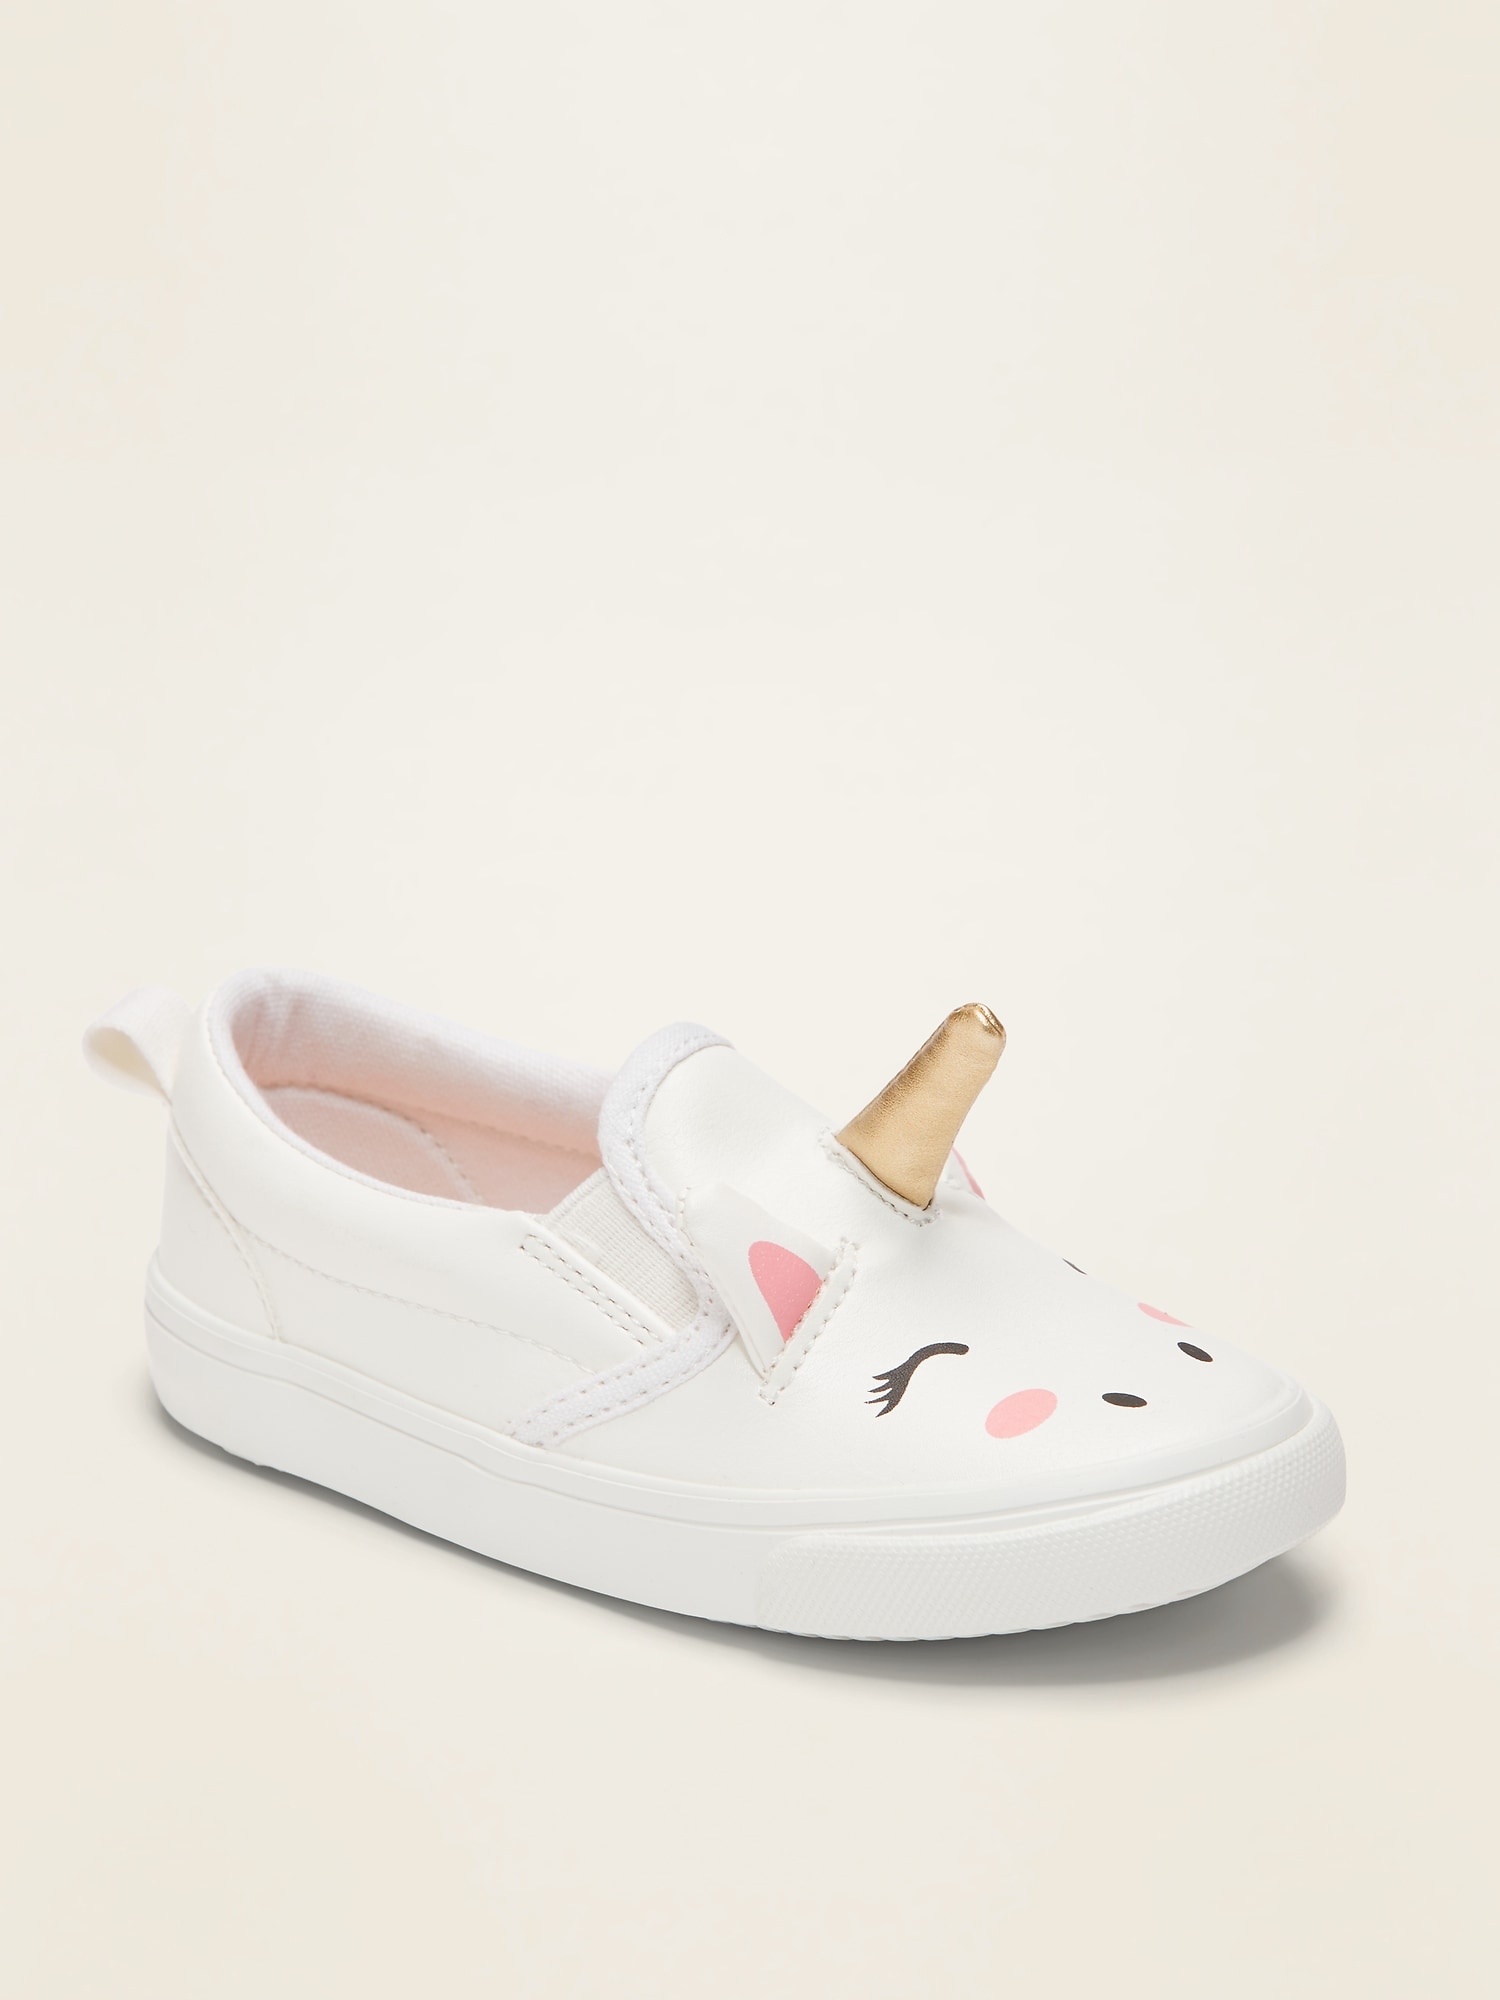 white slip on shoes for kids